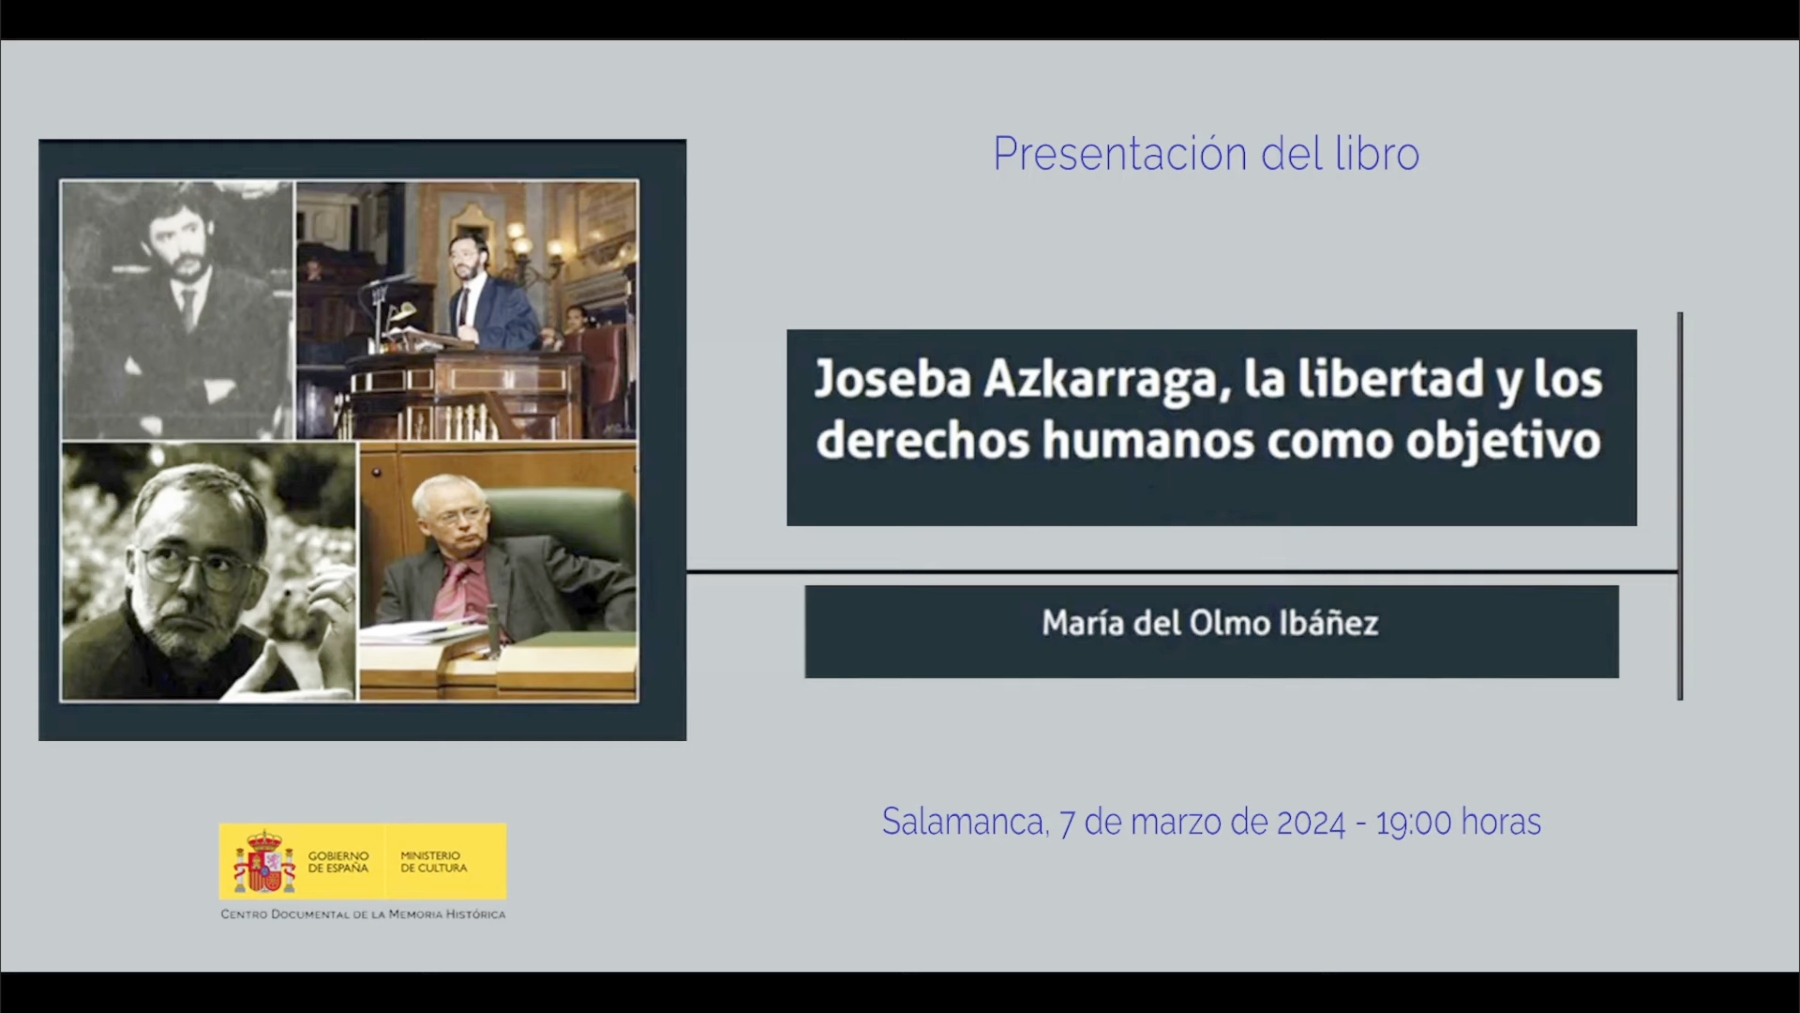 La presentación del libro de Joseba Azkarraga.